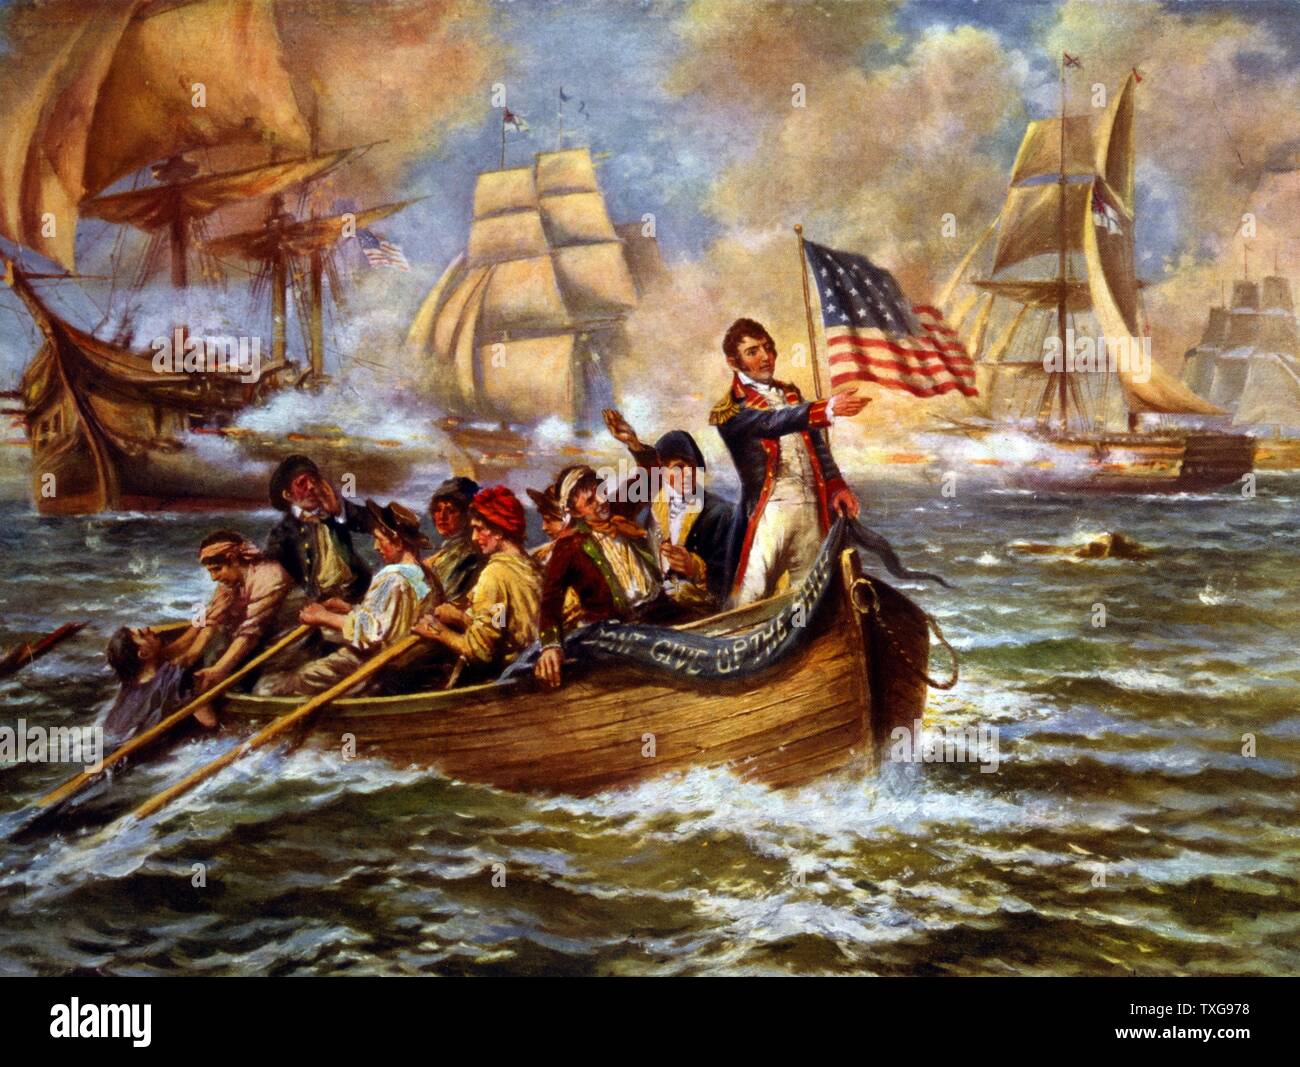 Guerra de 1812 : La Batalla del Lago Erie (put-in-Bay), Ohio, el 10 de septiembre de 1813 Oliver Perry en peligro de arco pequeño bote a remo, luego de abandonar su buque insignia 'Lawrence' Foto de stock